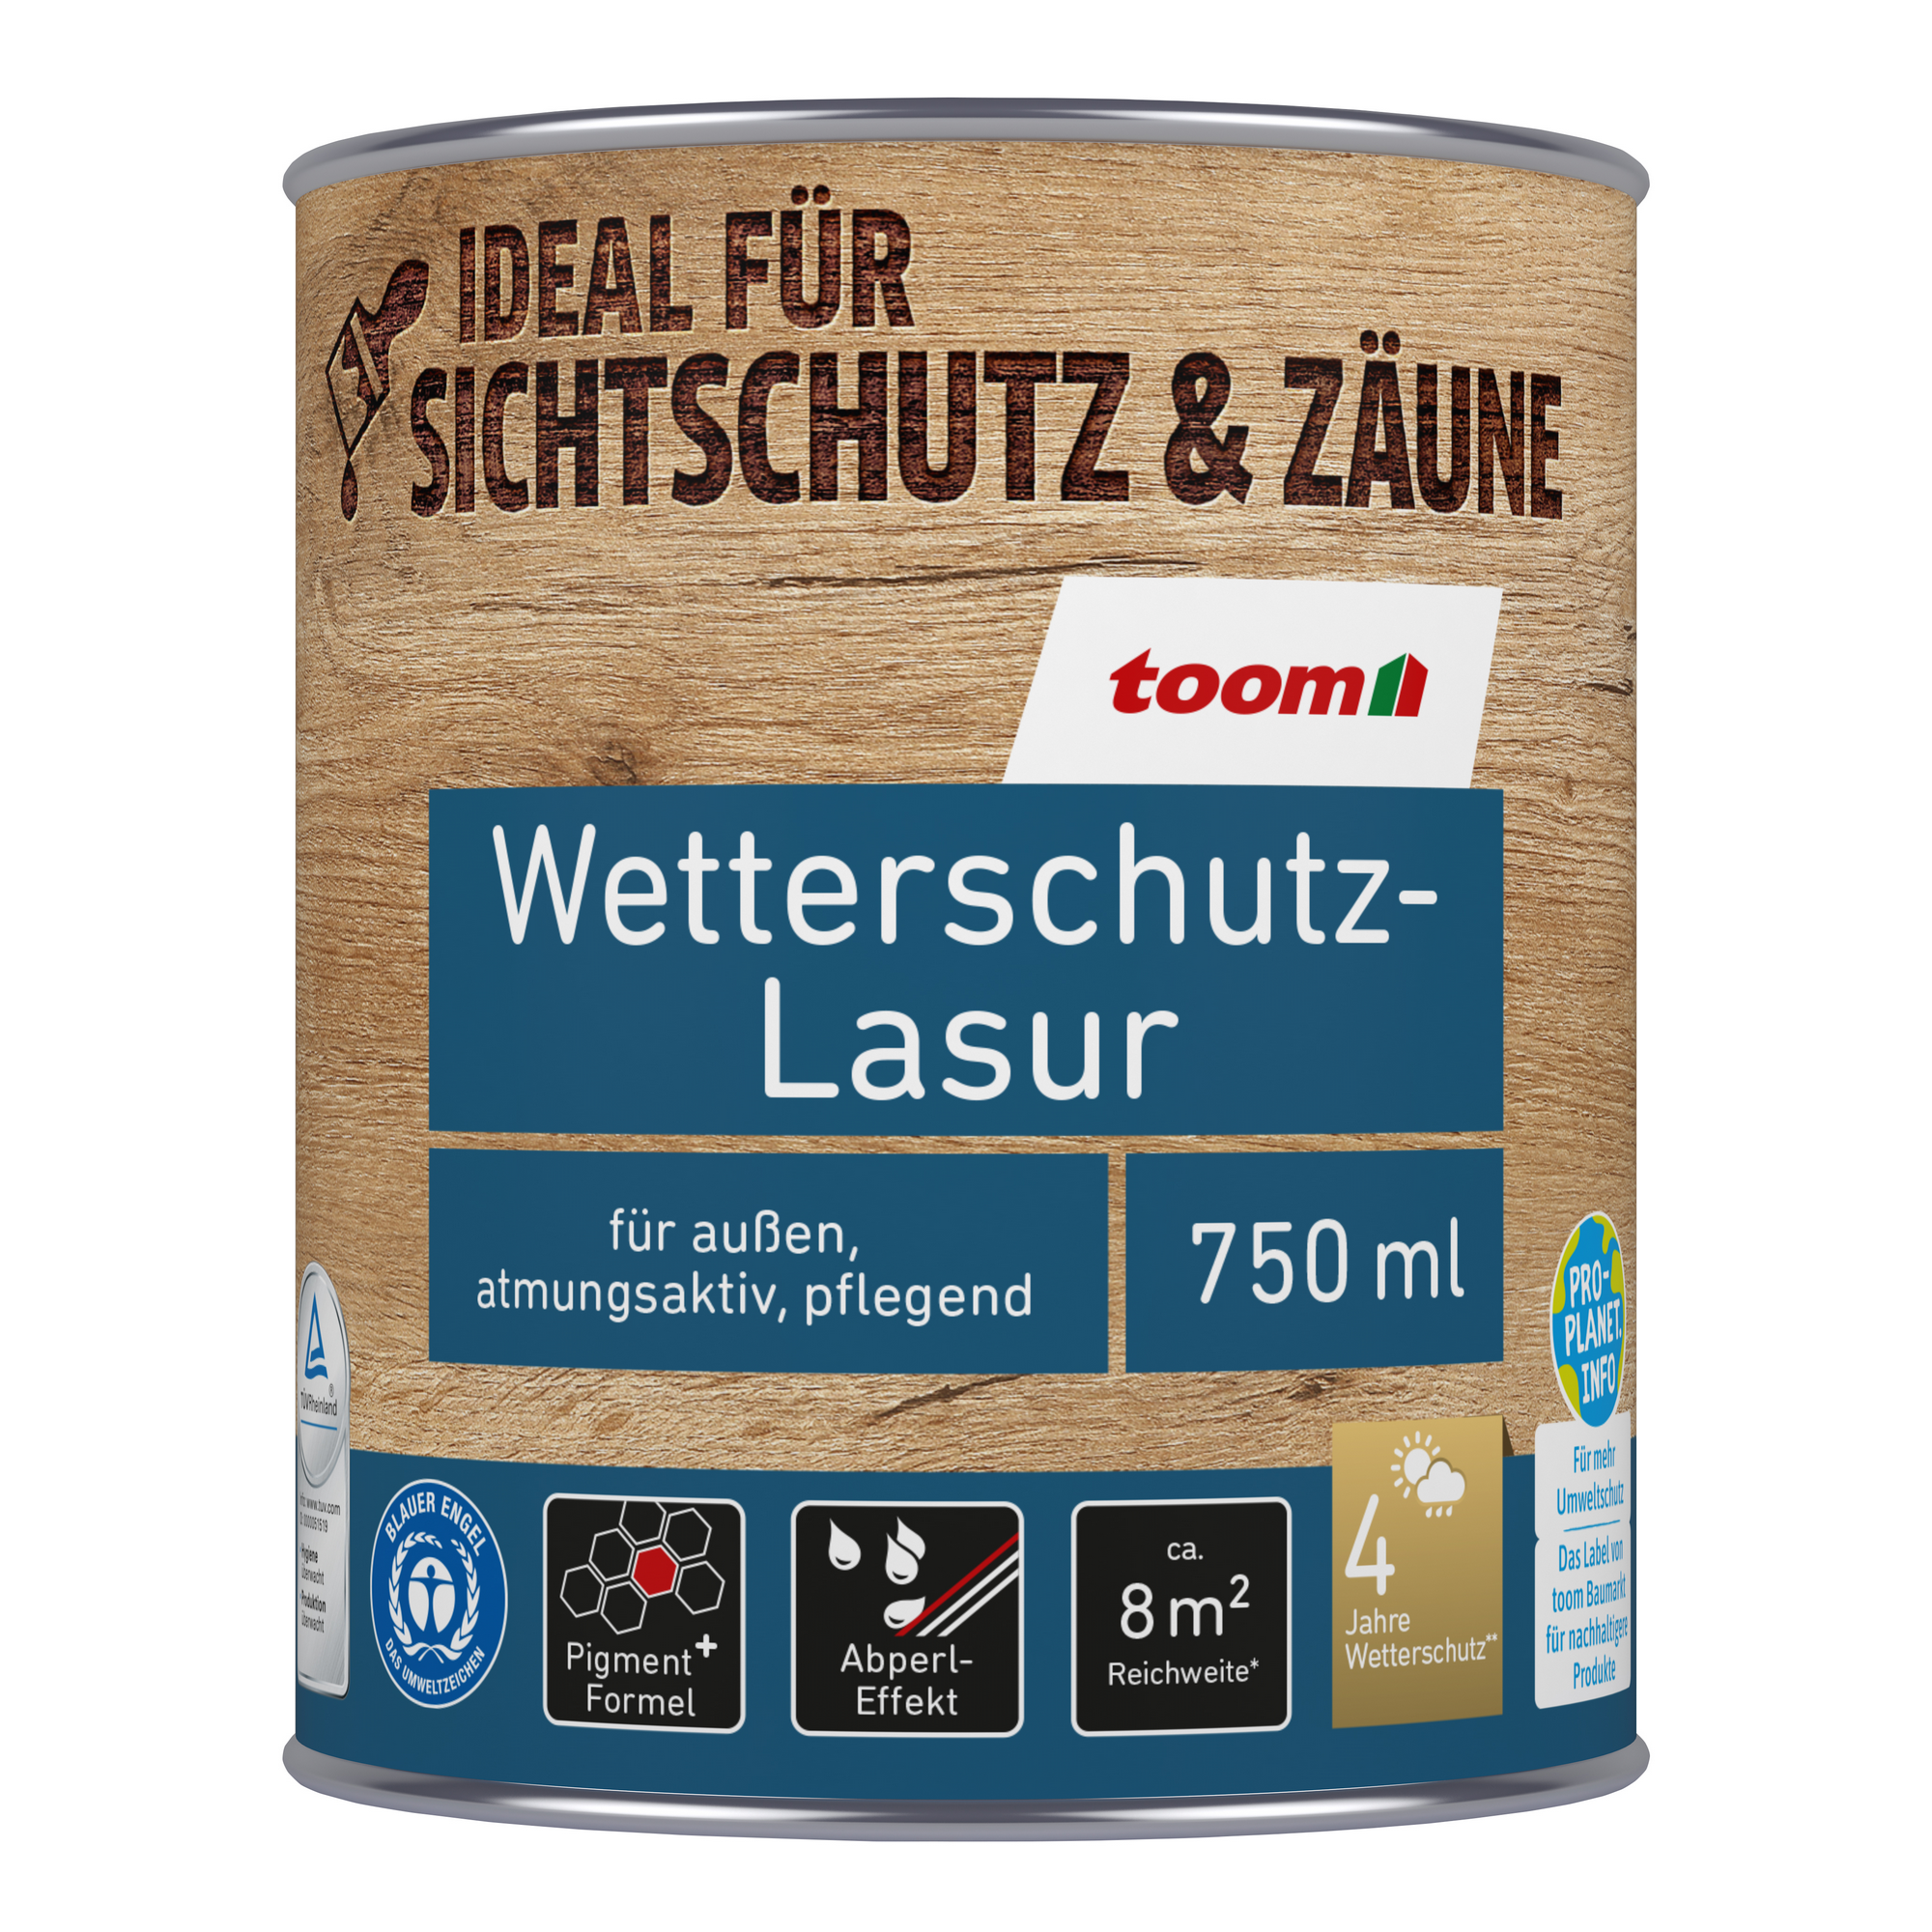 Wetterschutz-Lasur weiß 750 ml + product picture